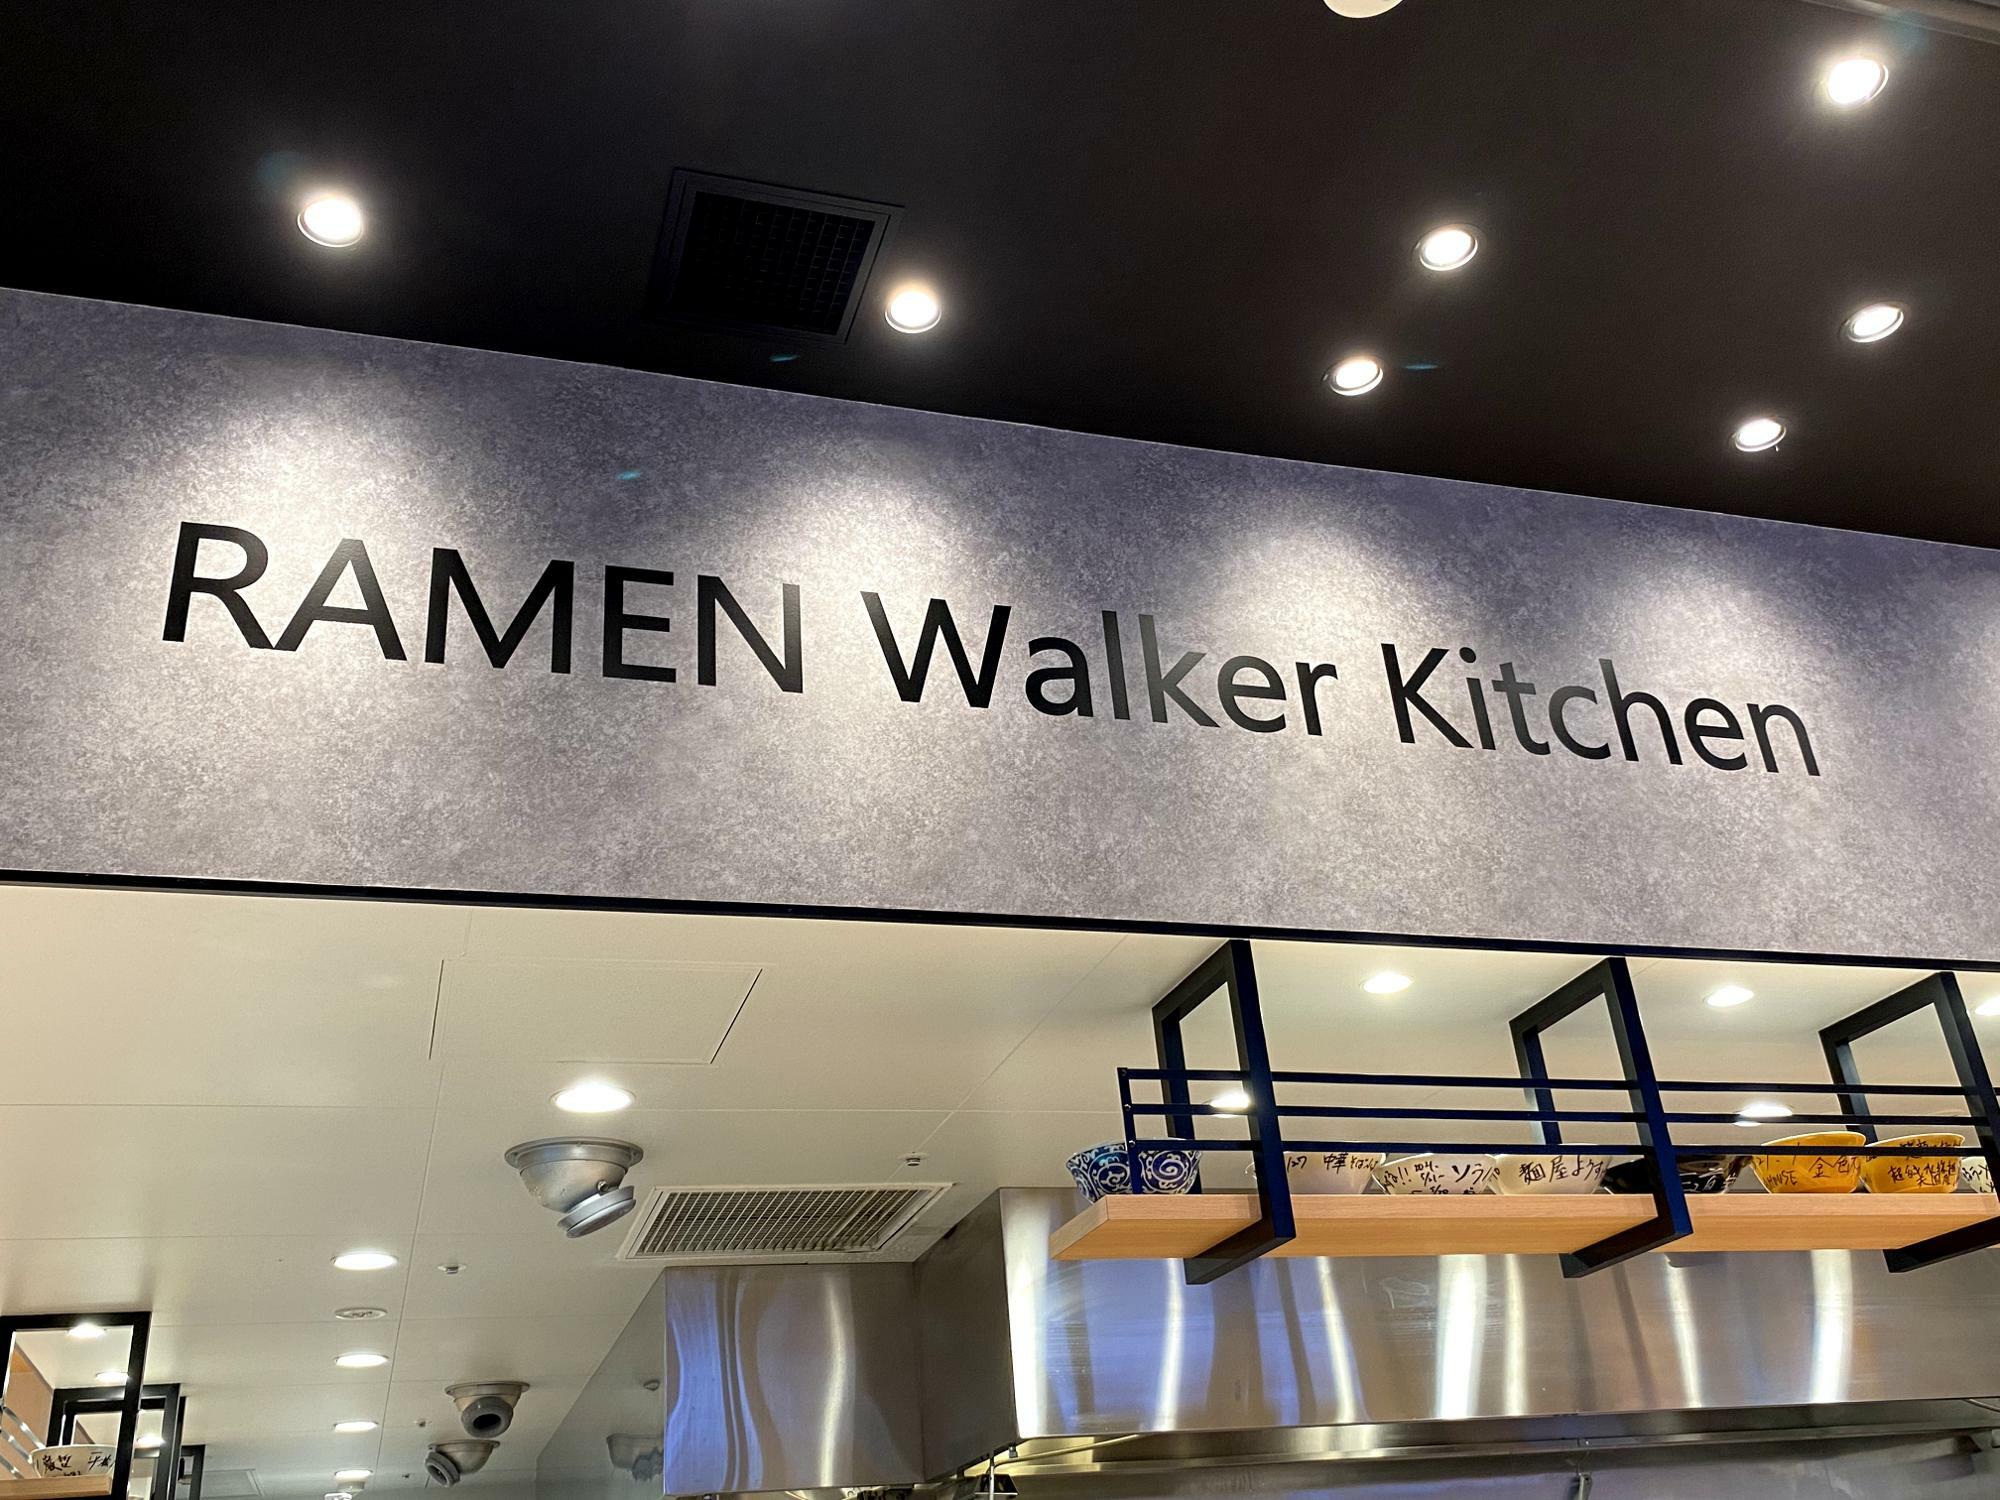 RAMEN Walker Kitchenの文字